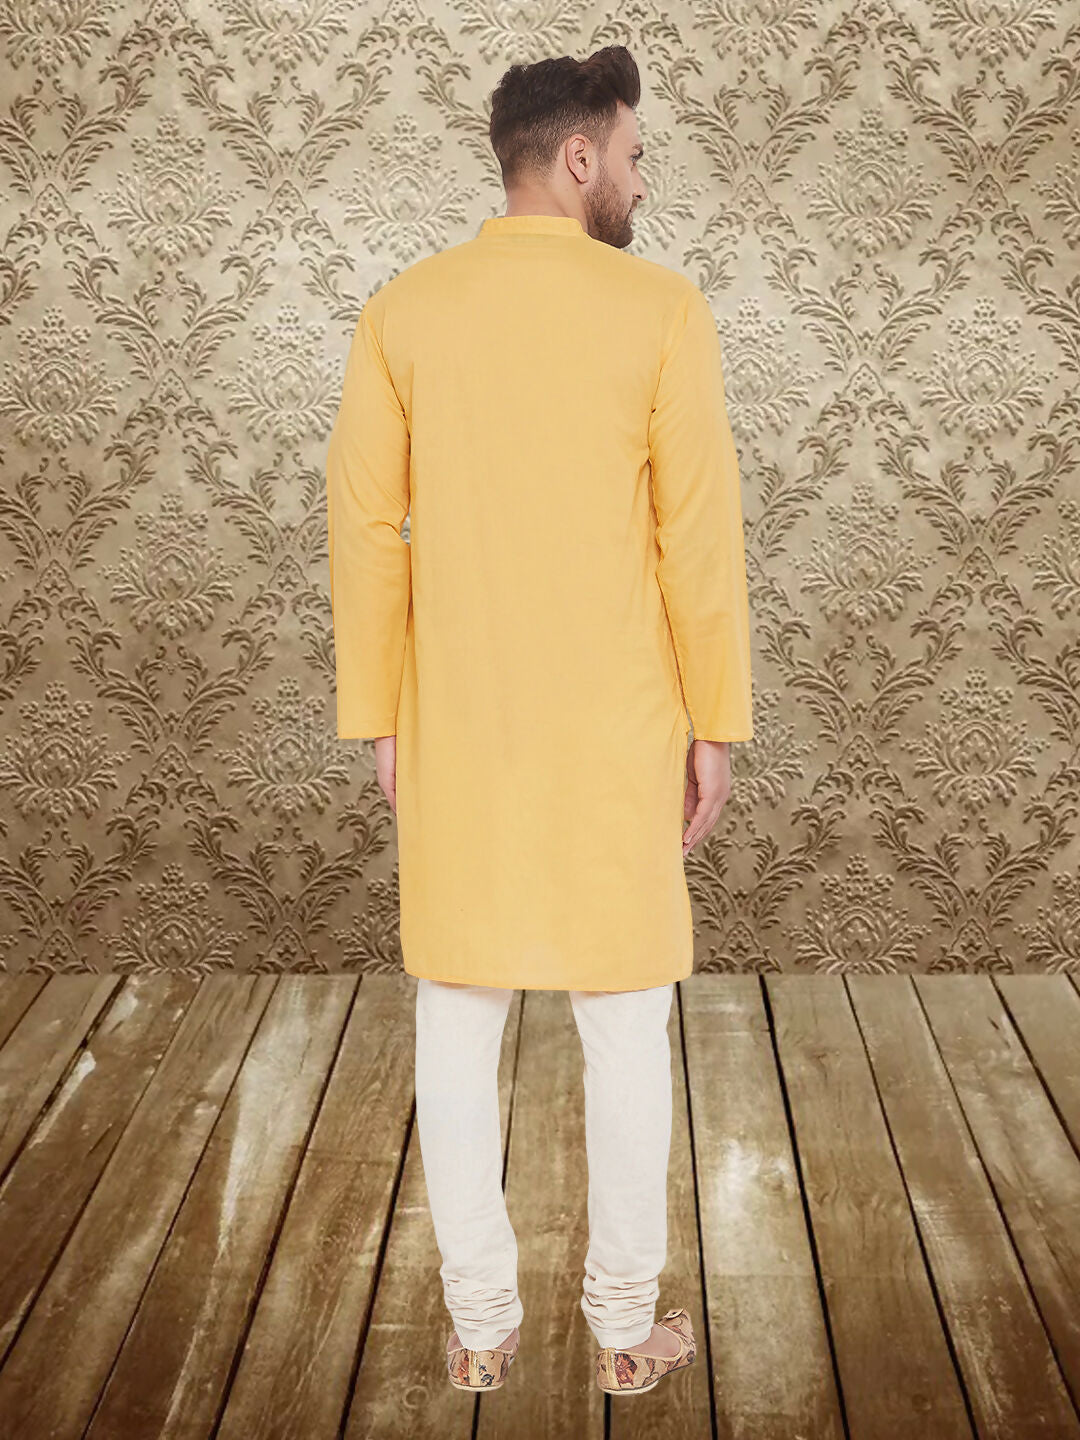 Even Apparels Men's Pintuck Fancy Yellow Kurta - Distacart